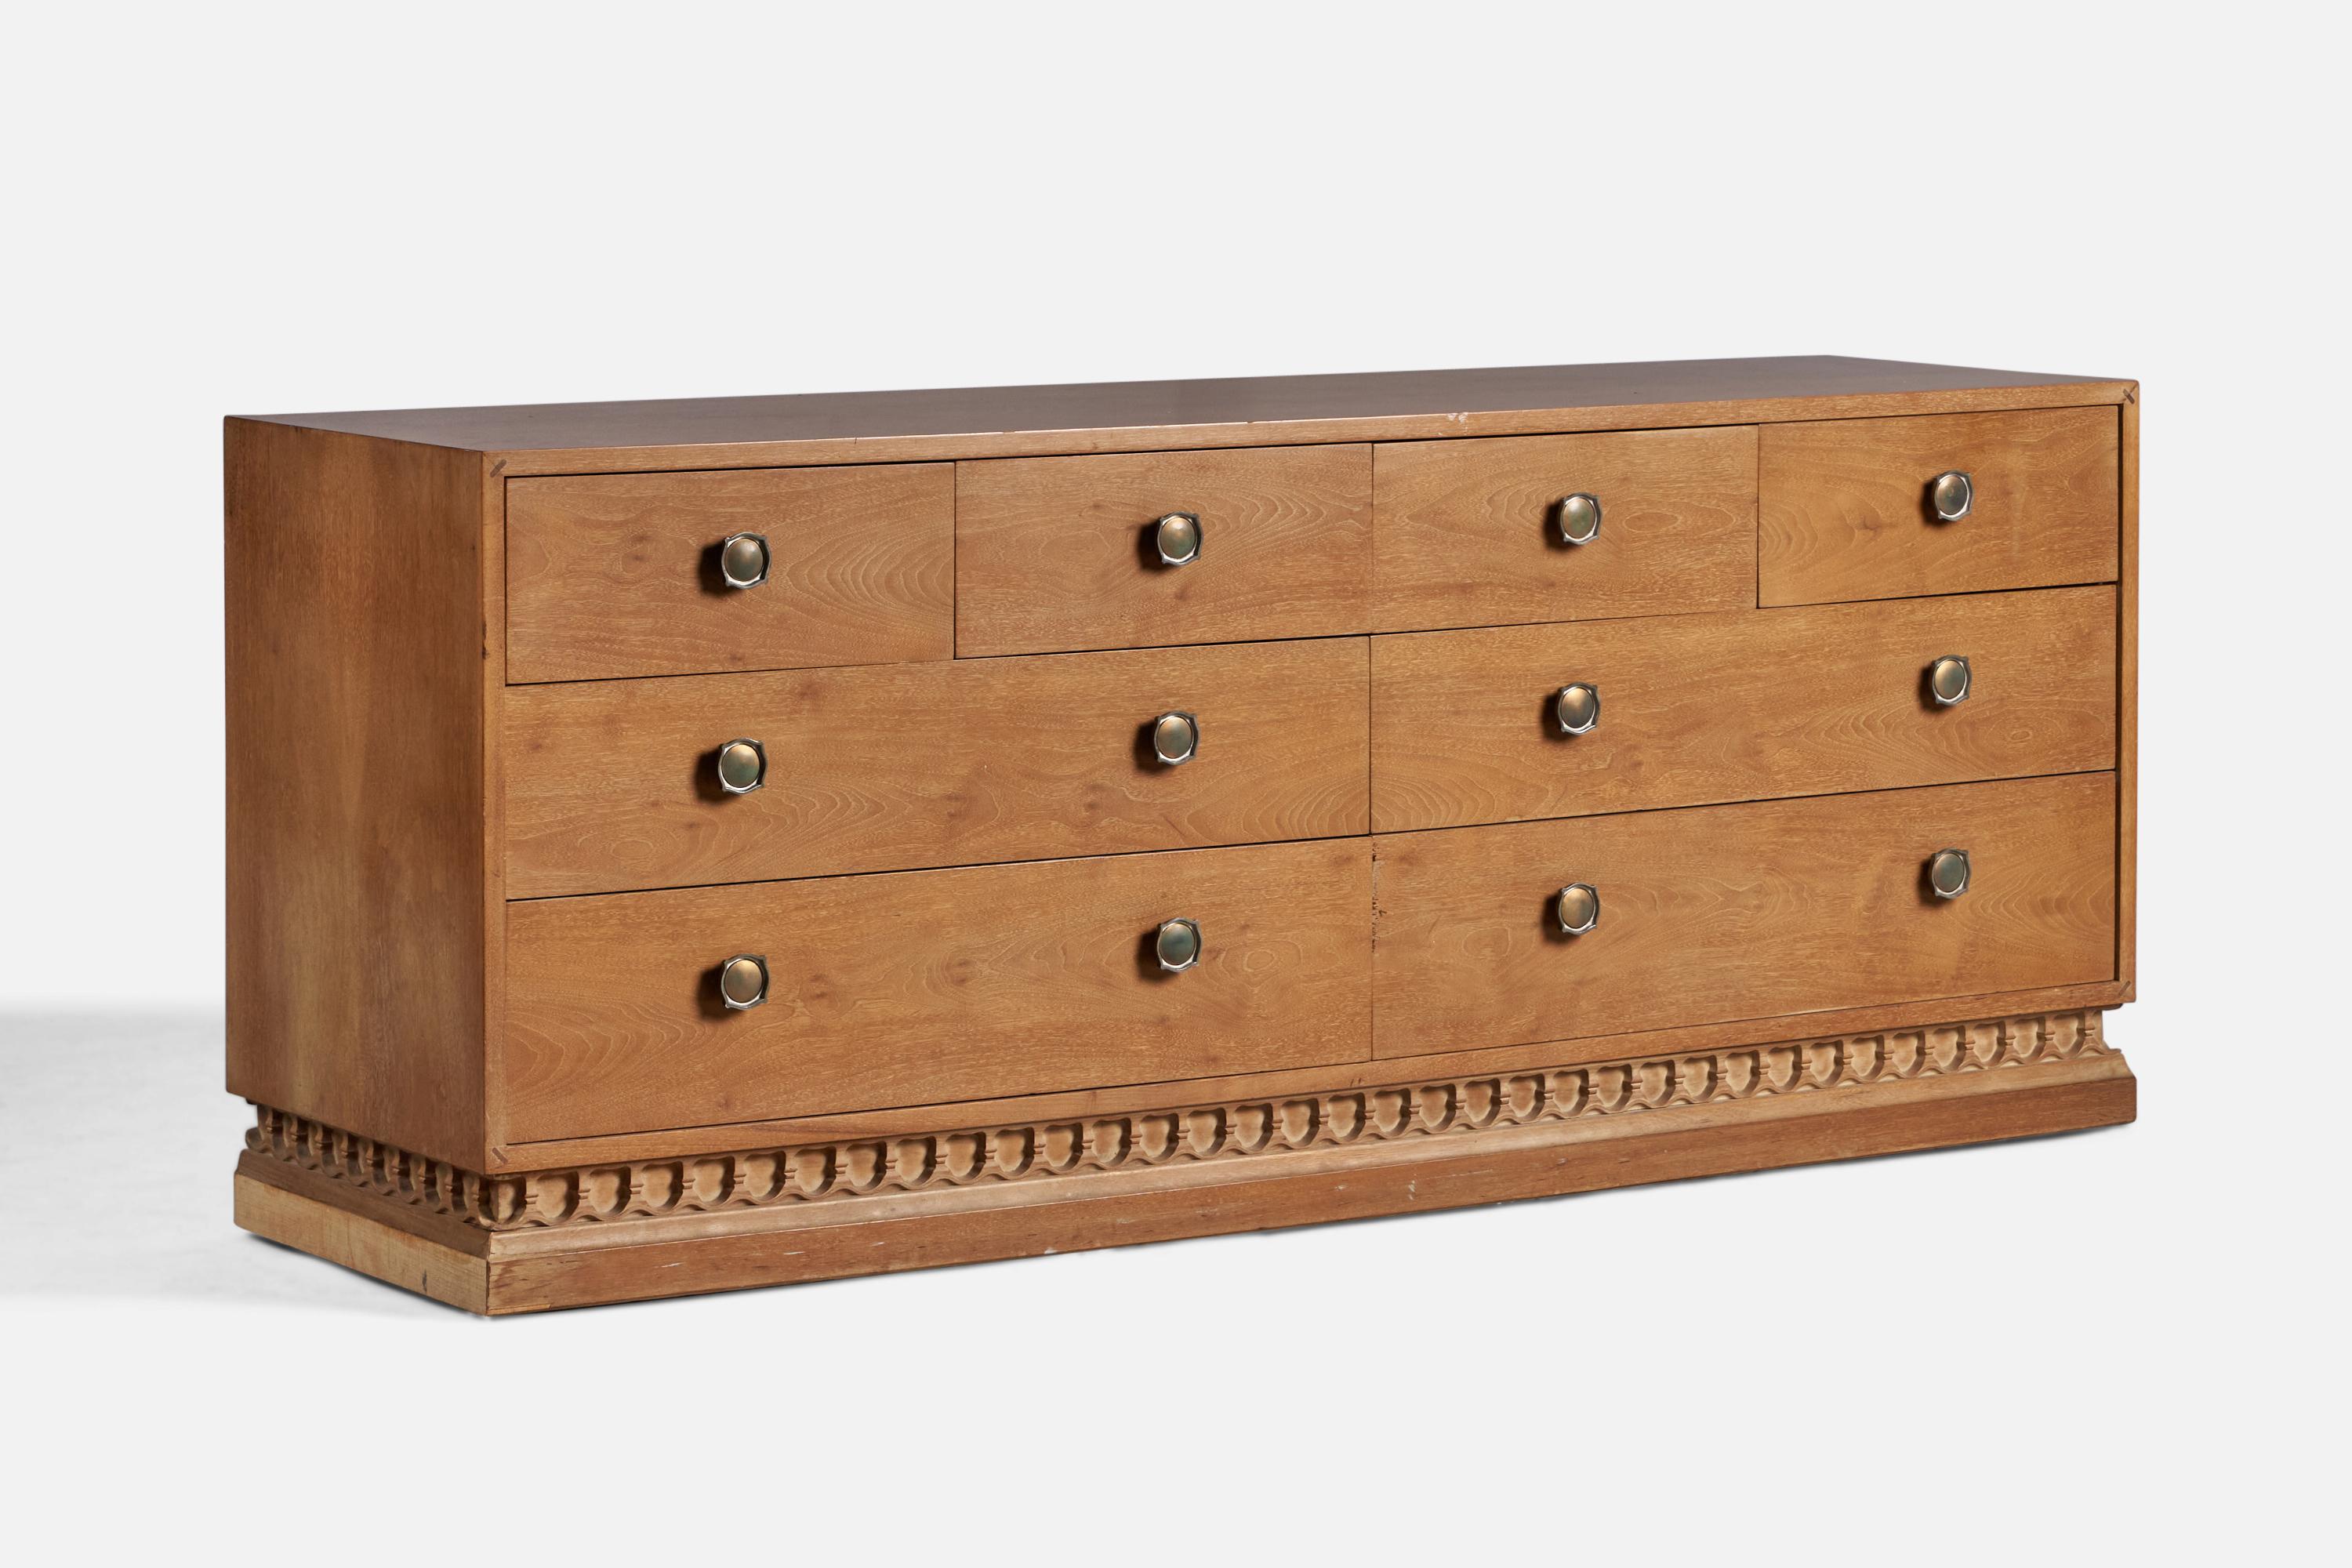 An oak and brass chest of drawers, from John Van Koert's 